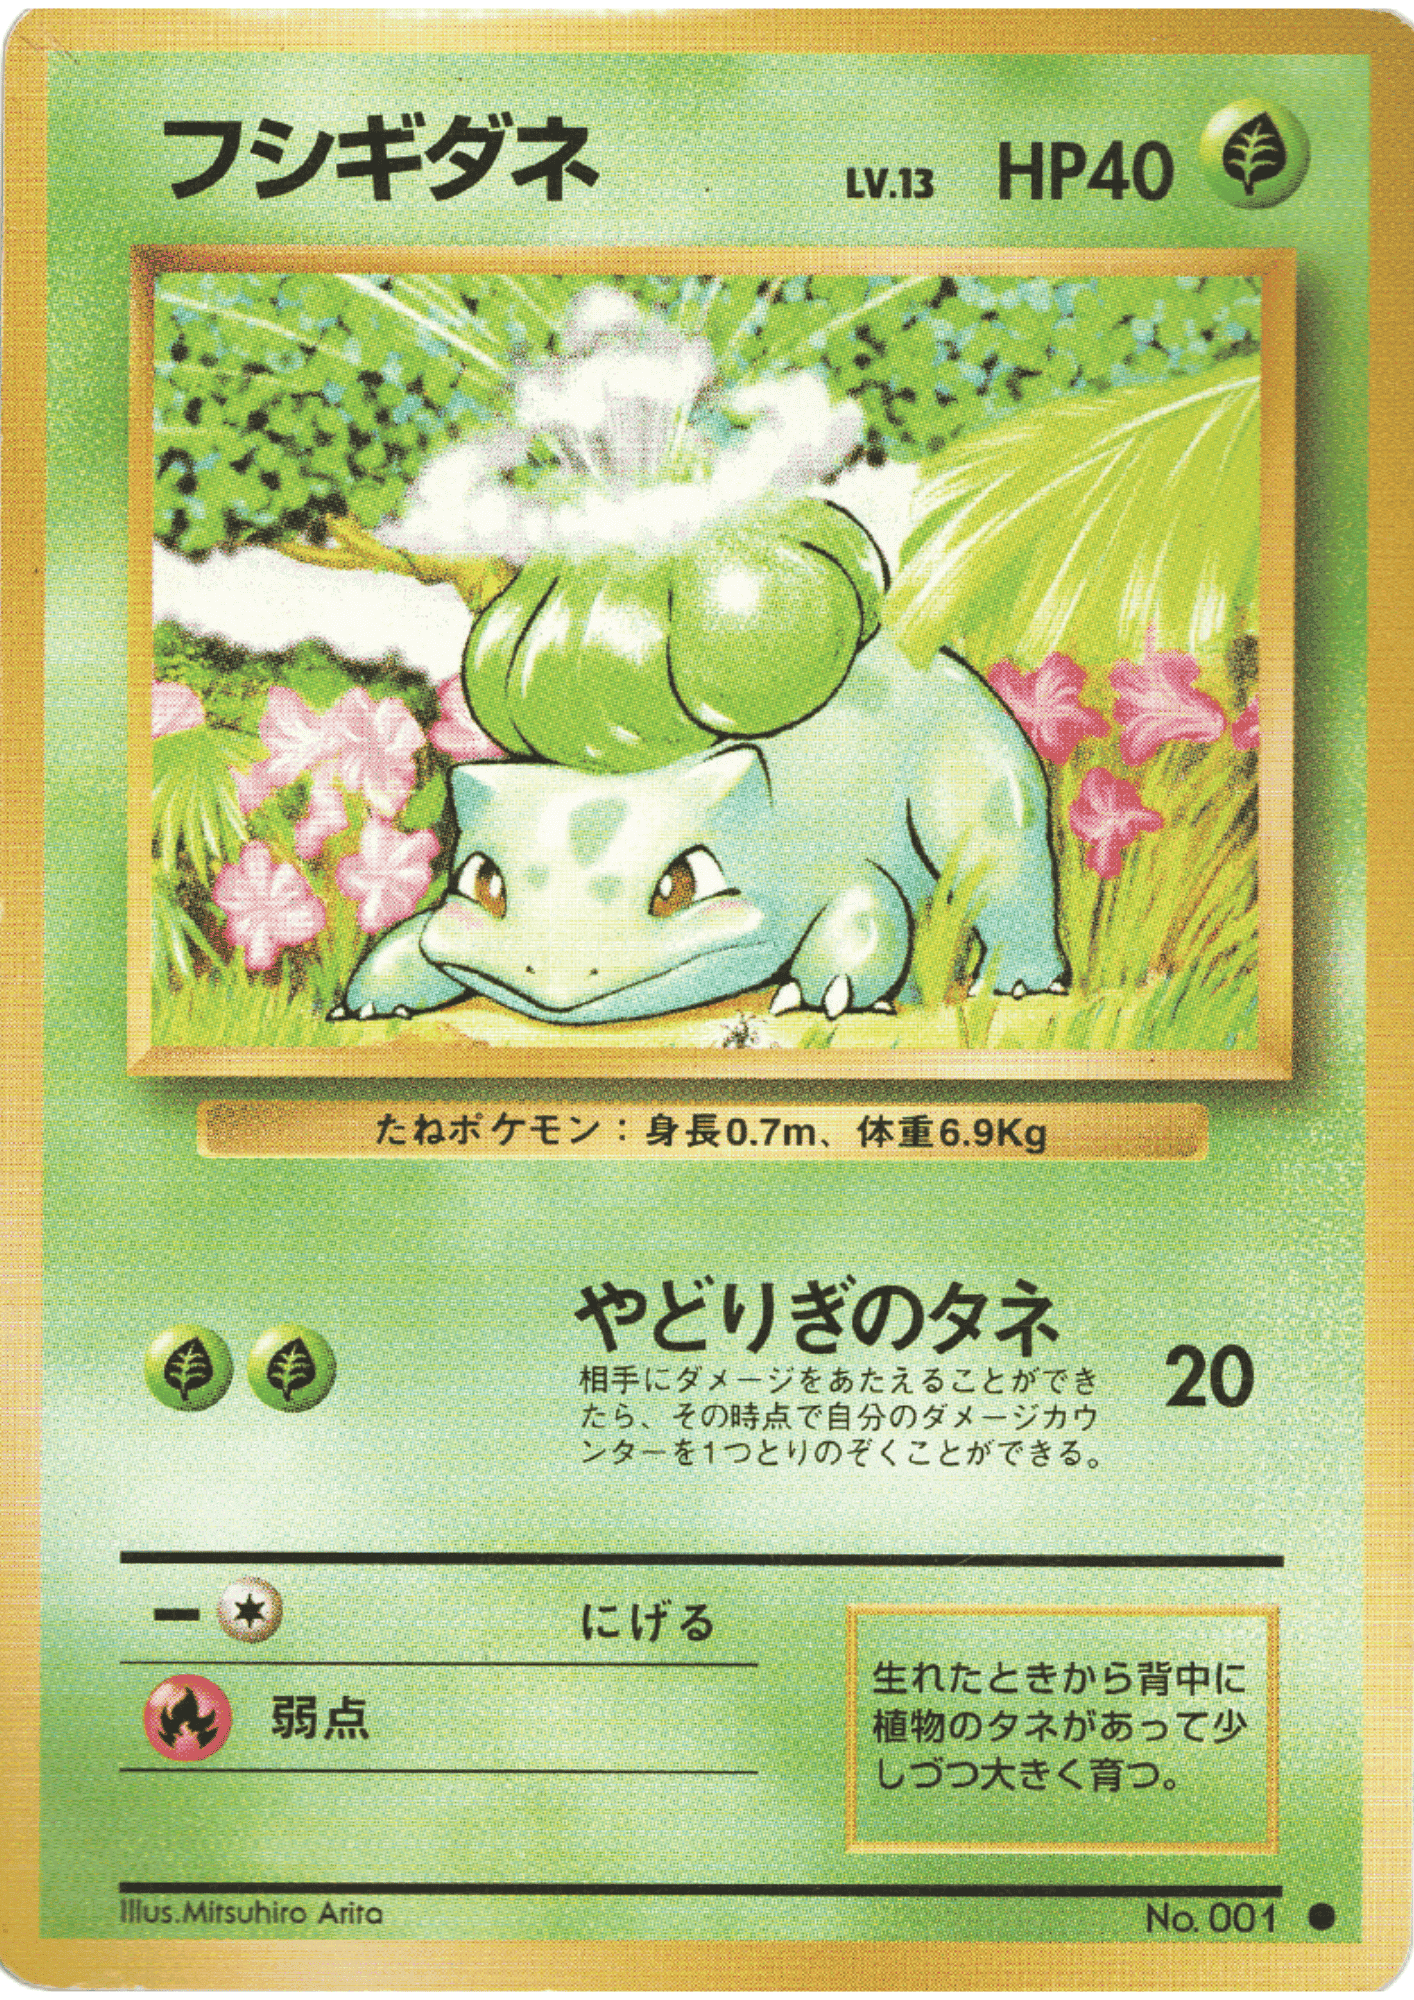 Bulbasaur No.001 | Japanese Base set ChitoroShop